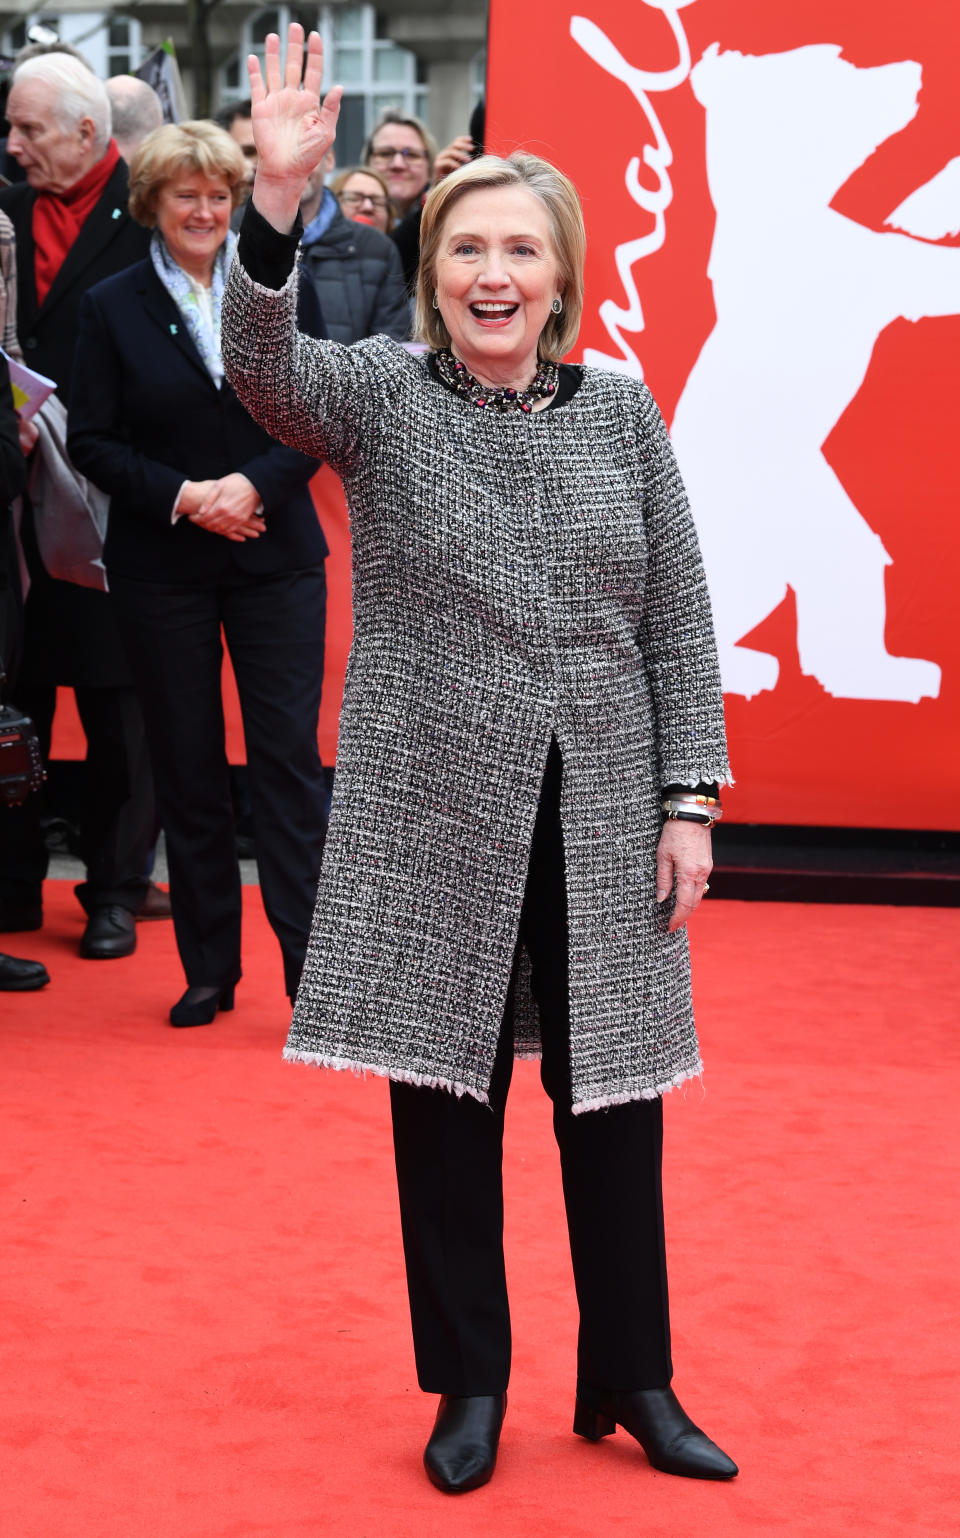 Ein Gast, den man auf der Berlinale nicht alle Tage sieht: Hillary Clinton, die zum Screening von "Hillary" in einem Outfit kam, das alles andere als kleinkariert war. (Bild: Paul Treadway/Barcroft Media via Getty Images)